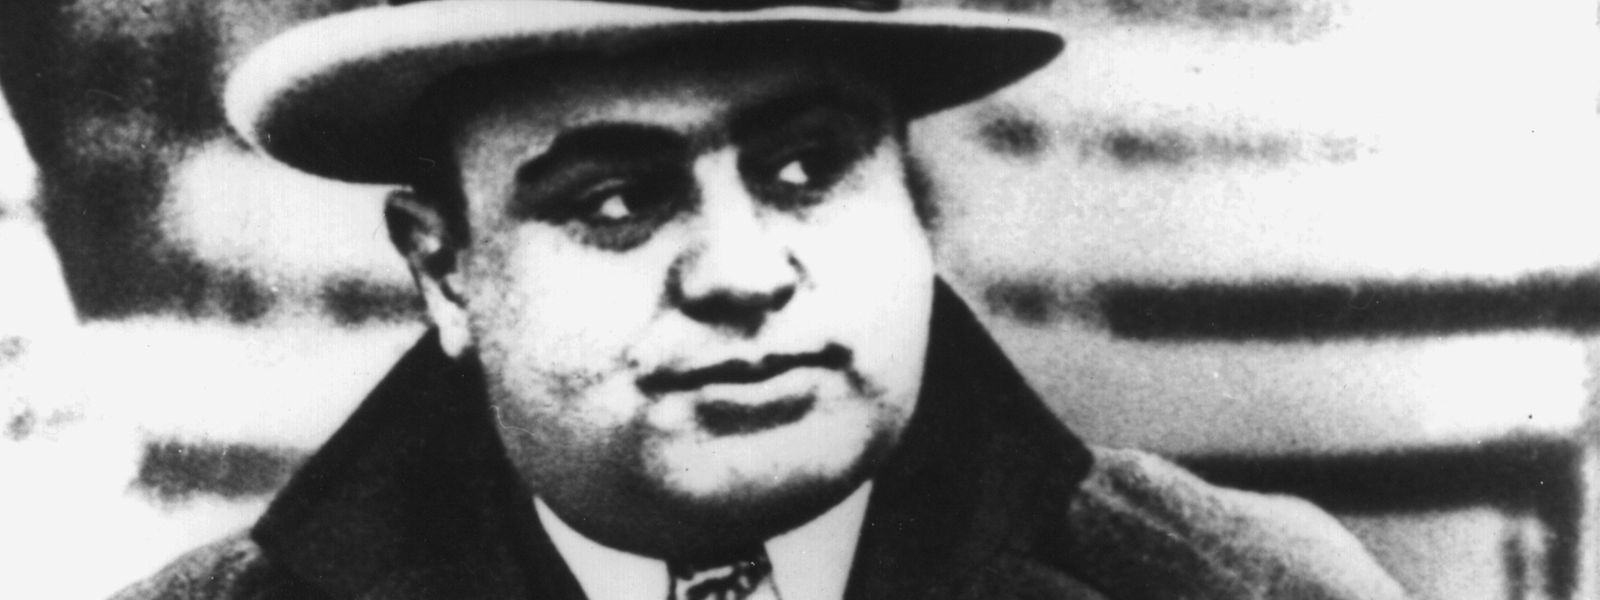 Al Capone, genannt "Scarface", der amerikanische Bandenchef der "Unterwelt" von Chicago.